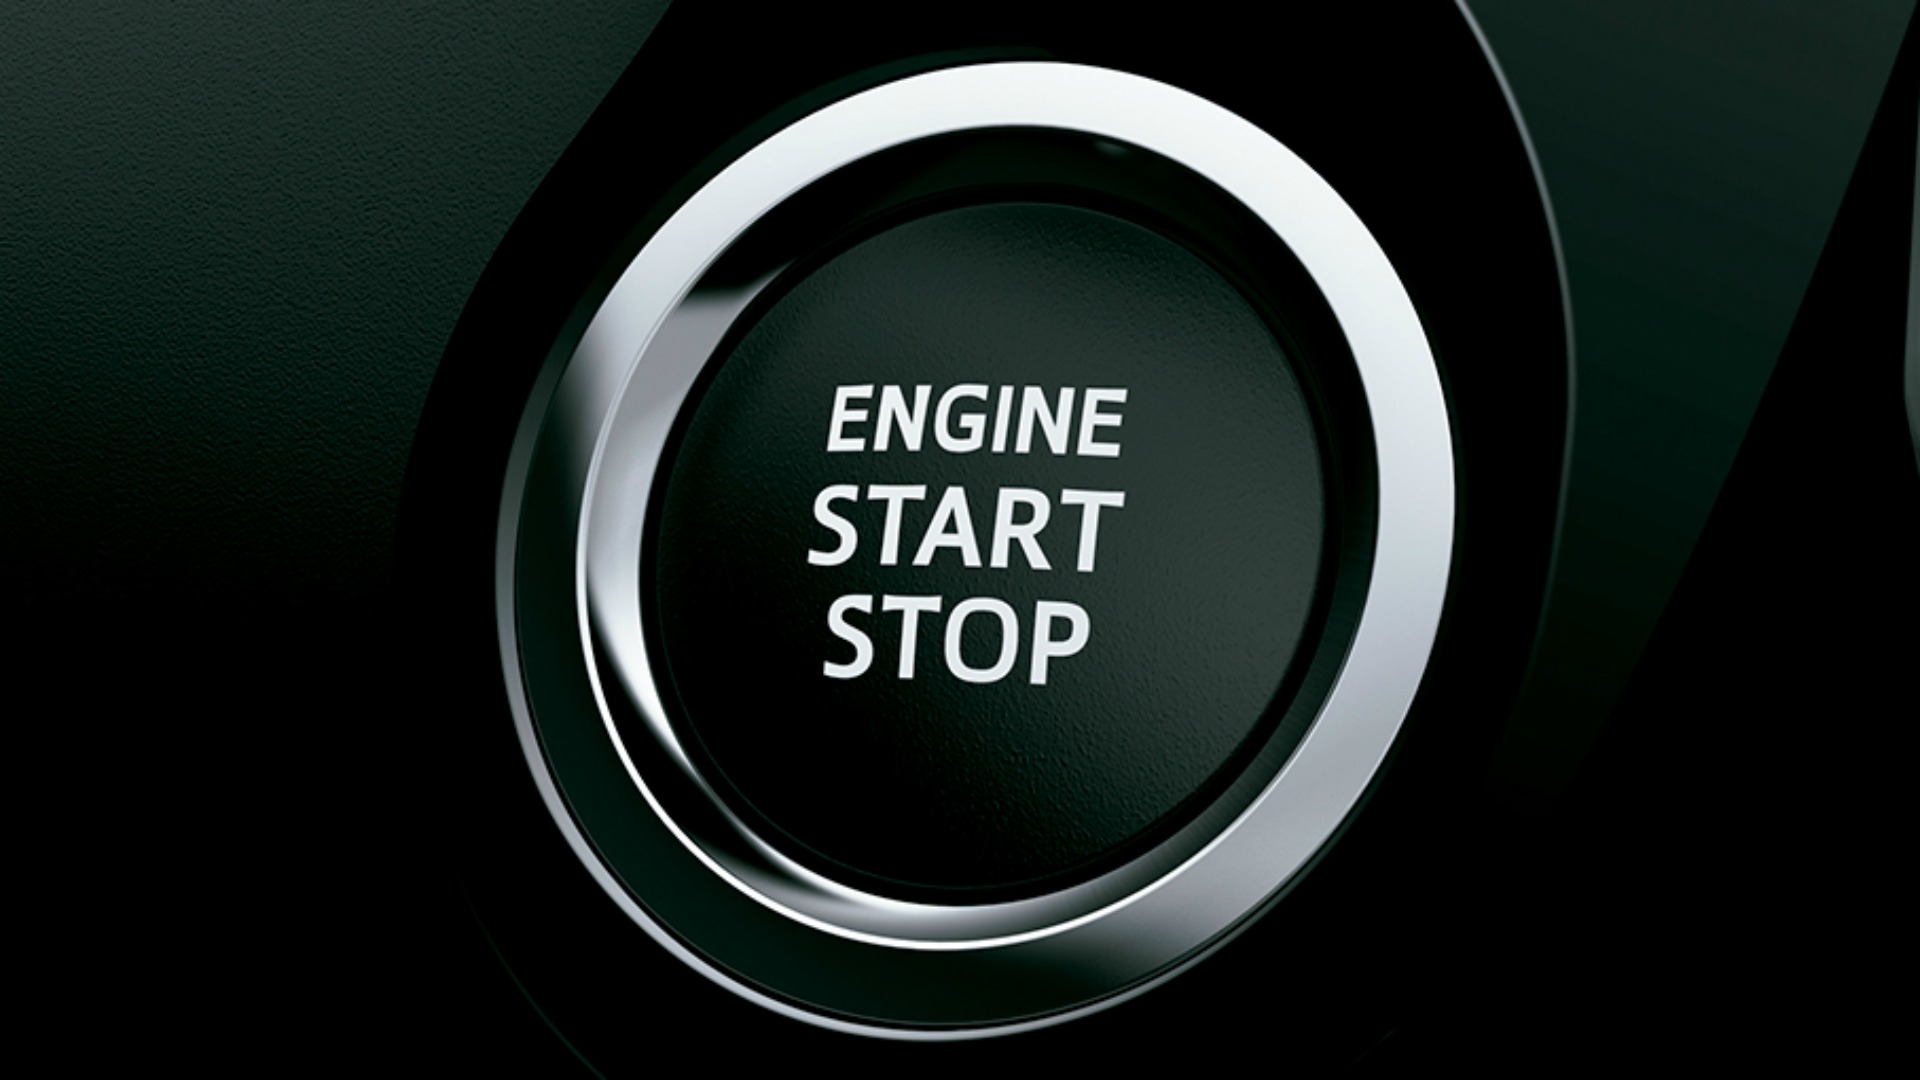 Es el botón de encendido y apagado del motor, pero el mismo termino se utiliza para identificar el sistema que permite ahorrar combustible al detenerse de forma automática en semáforos y embotellamientos